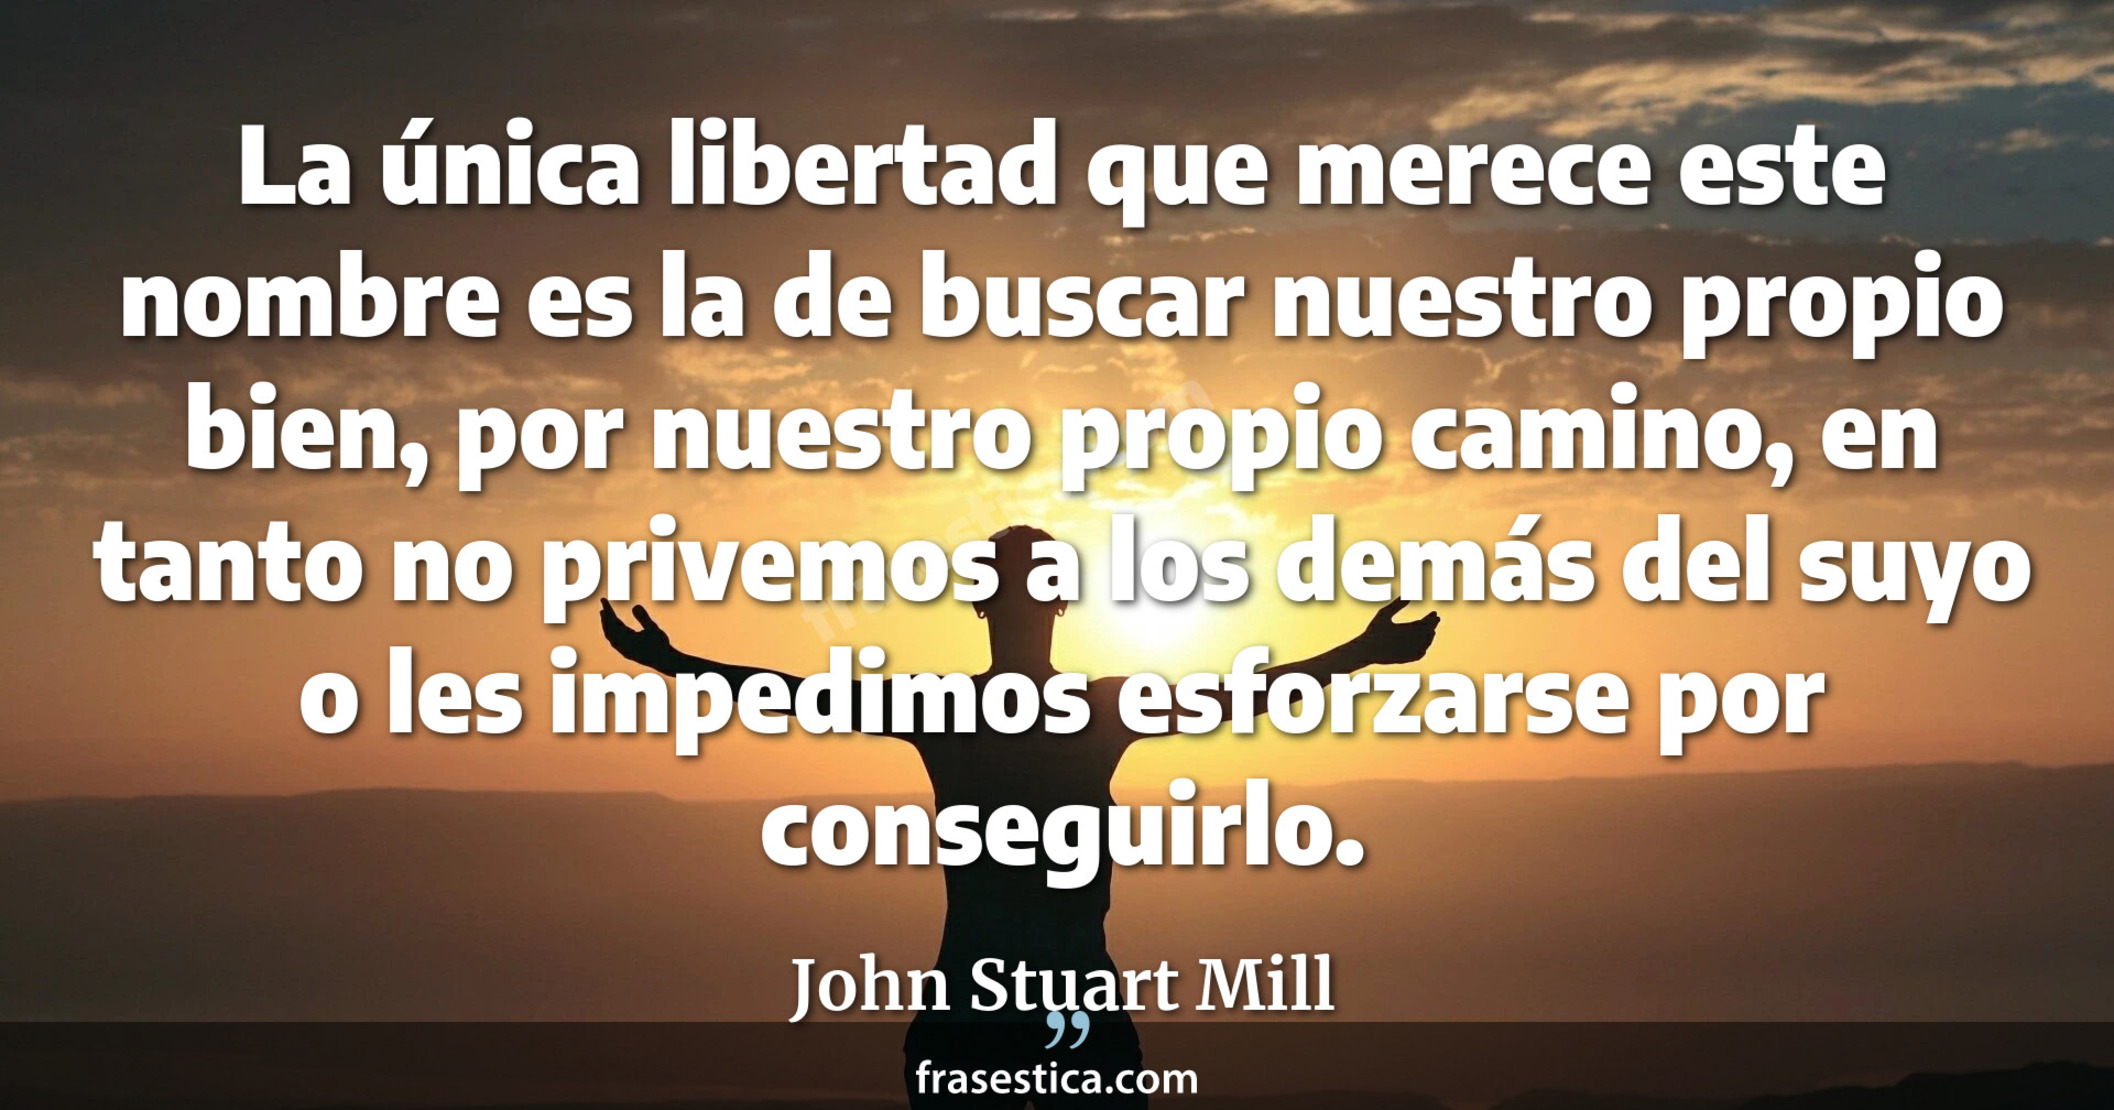 La única libertad que merece este nombre es la de buscar nuestro propio bien, por nuestro propio camino, en tanto no privemos a los demás del suyo o les impedimos esforzarse por conseguirlo. - John Stuart Mill